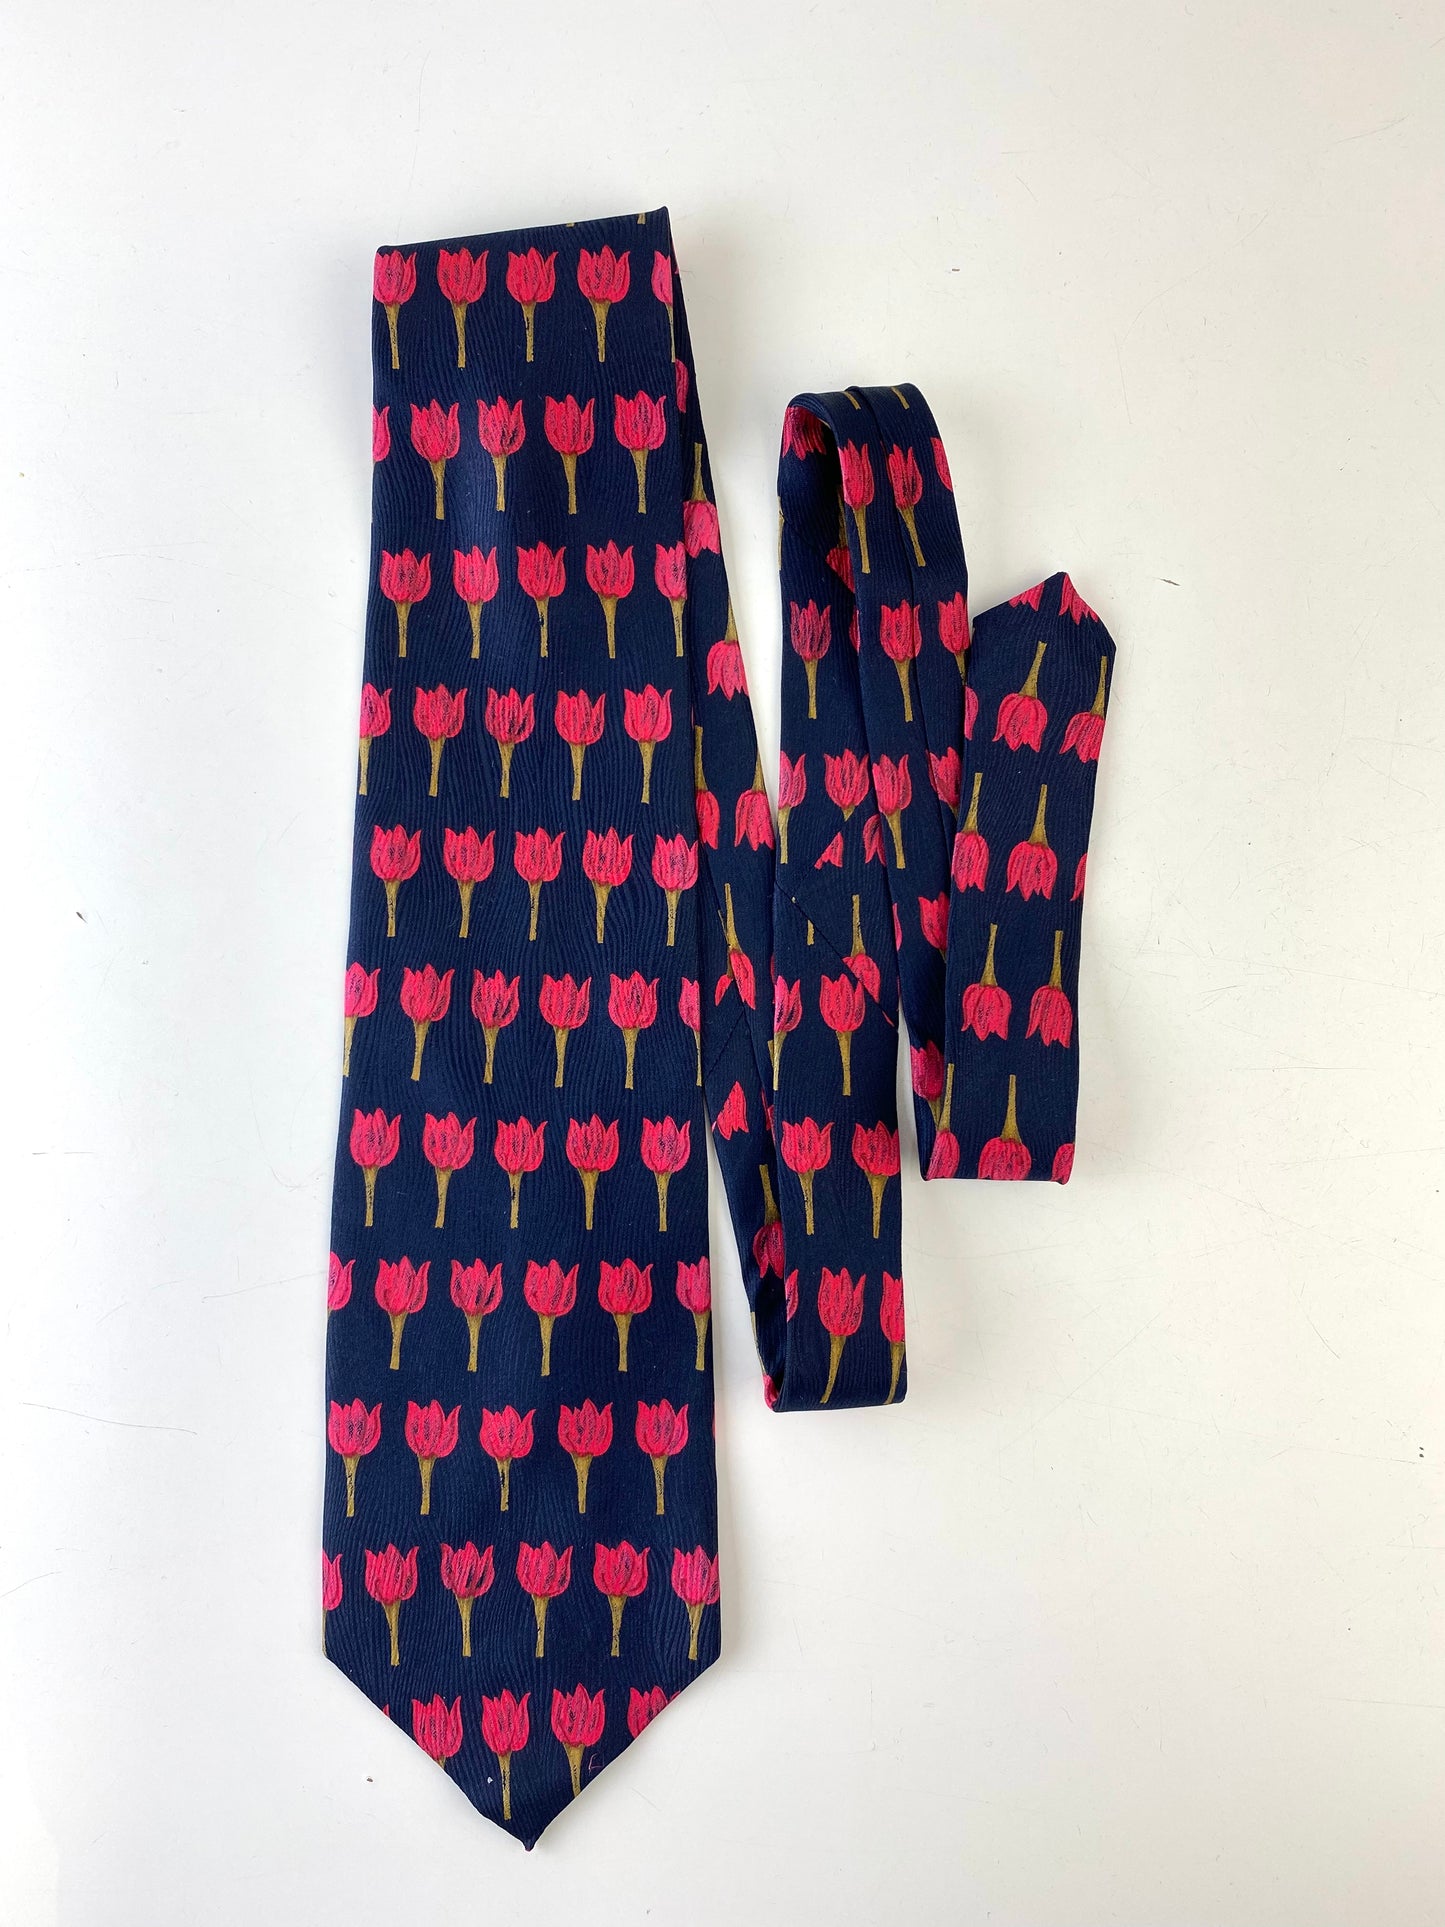 90s Deadstock Silk Necktie, Men's Vintage Navy Red Floral Tulip Pattern, NOS